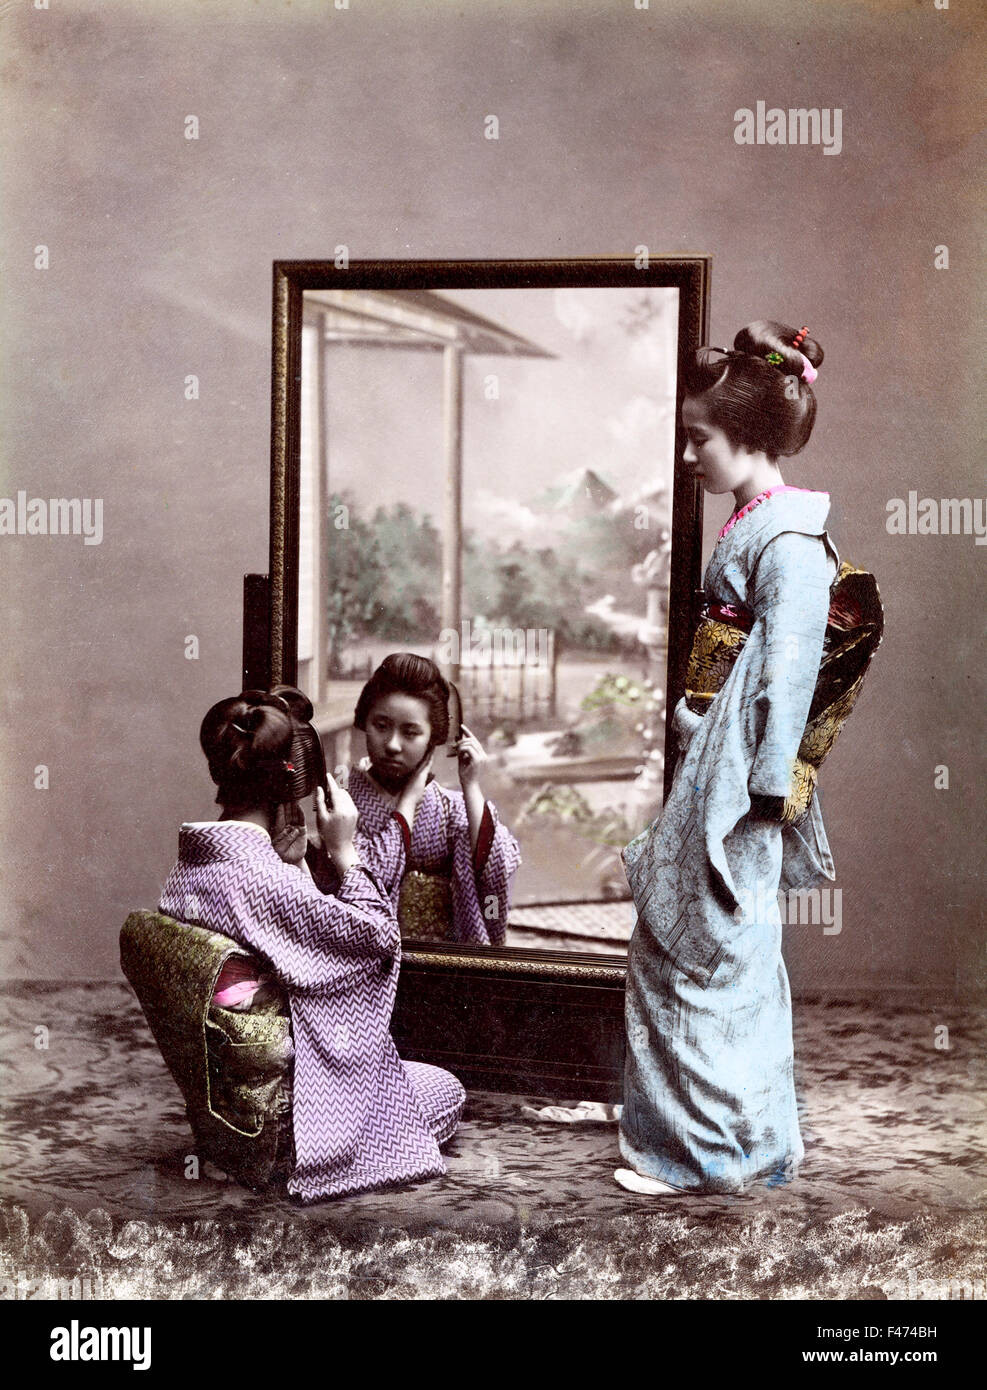 Zwei Geishas vor Spiegel, Japan Stockfoto